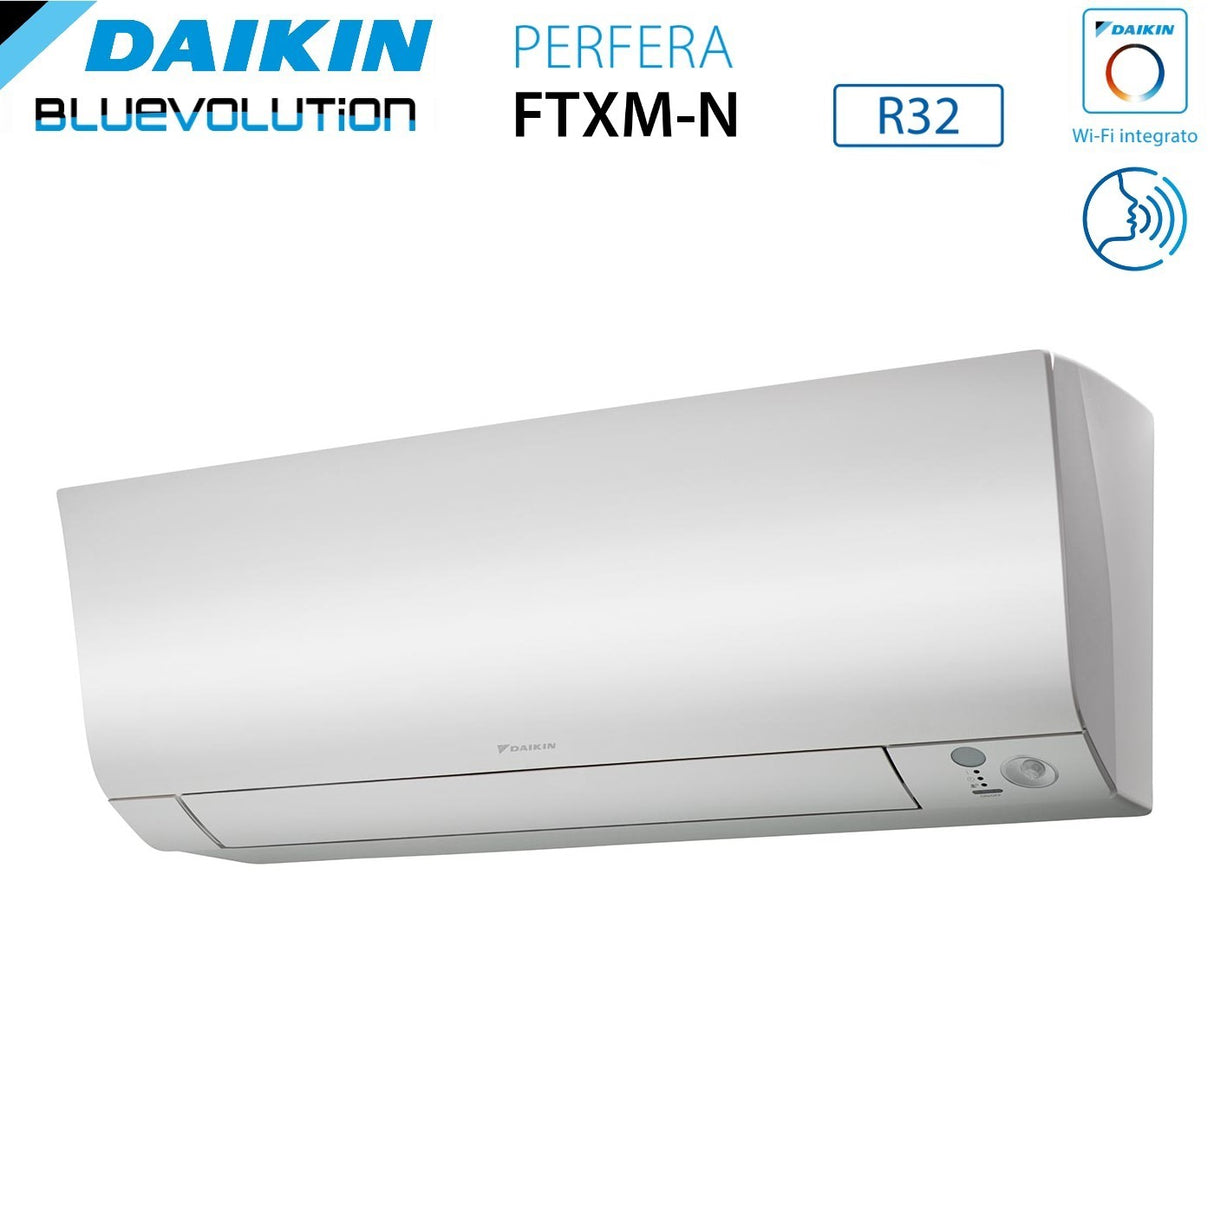 immagine-4-daikin-climatizzatore-condizionatore-daikin-bluevolution-dual-split-inverter-serie-ftxmn-perfera-912-con-2mxm40a-r-32-wi-fi-integrato-900012000-garanzia-italiana-ean-8059657007636